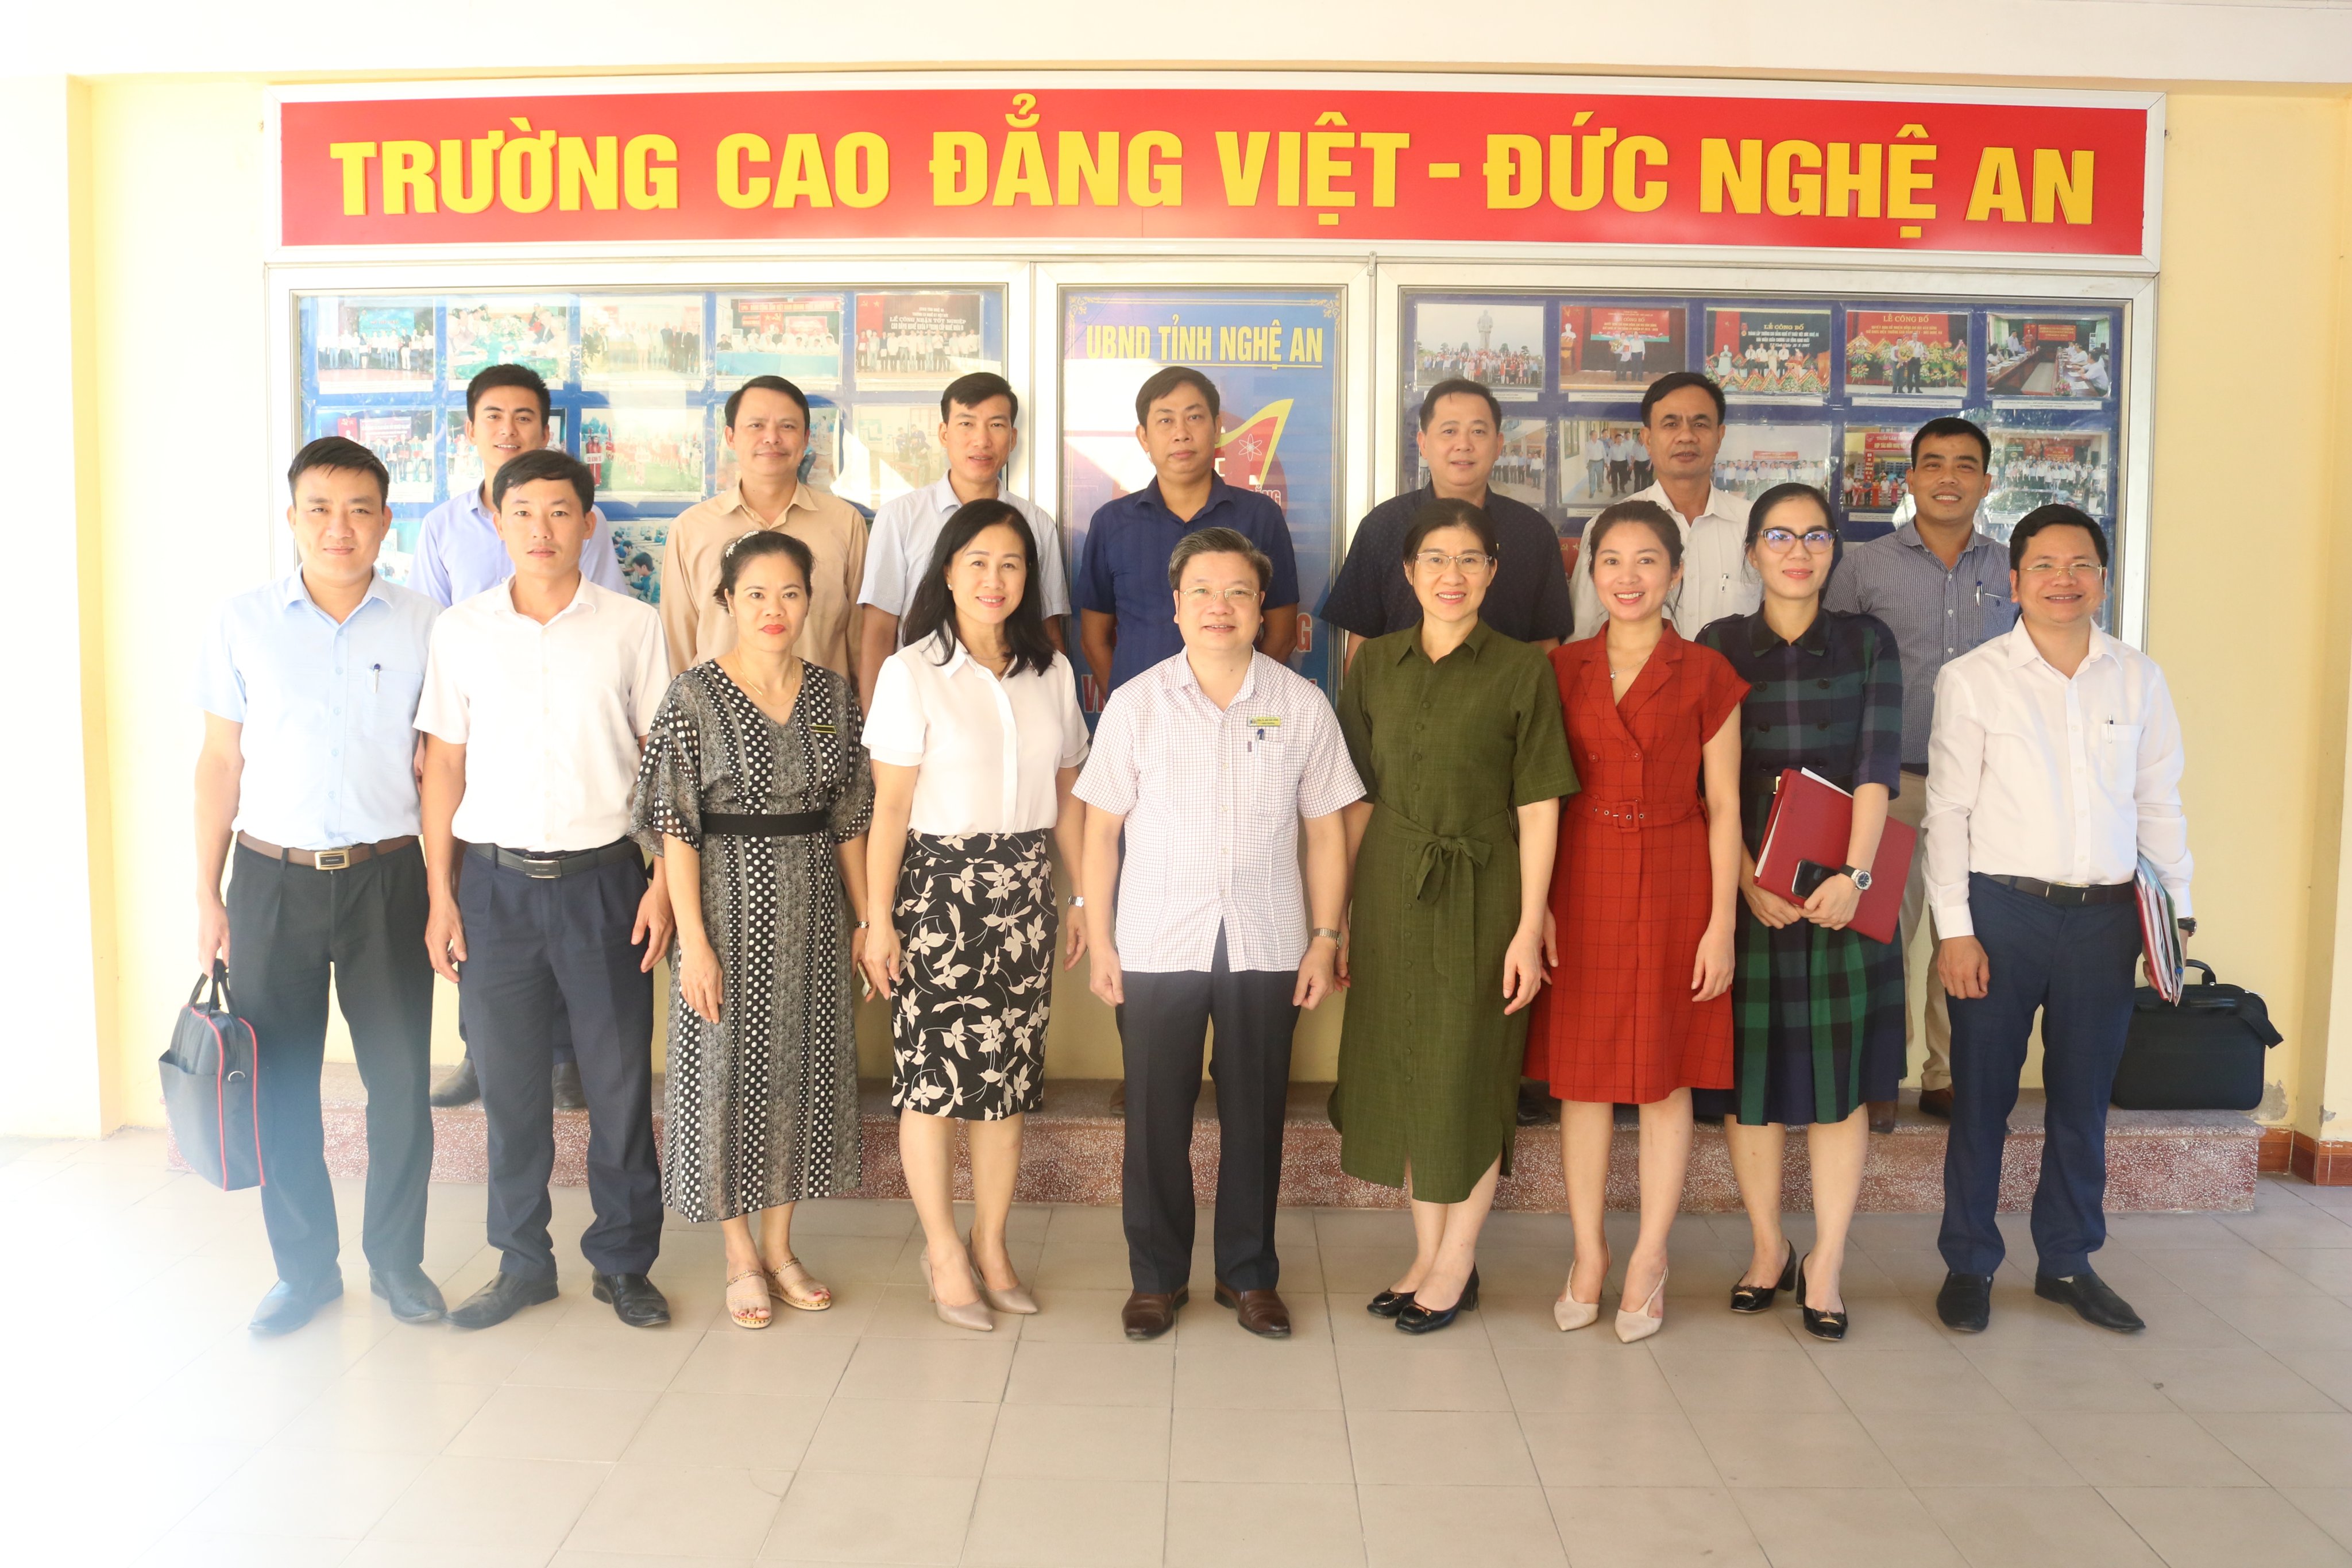 Đoàn giám sát Hội đồng nhân dân tỉnh làm việc với Trường Cao đẳng Việt - Đức Nghệ An về thực hiện chính sách đào tạo nghề, quản lý sử dụng lao động và phát triển nguồn nhân lực vùng đồng bào Dân tộc thiểu số và miền núi tỉnh Nghệ An.